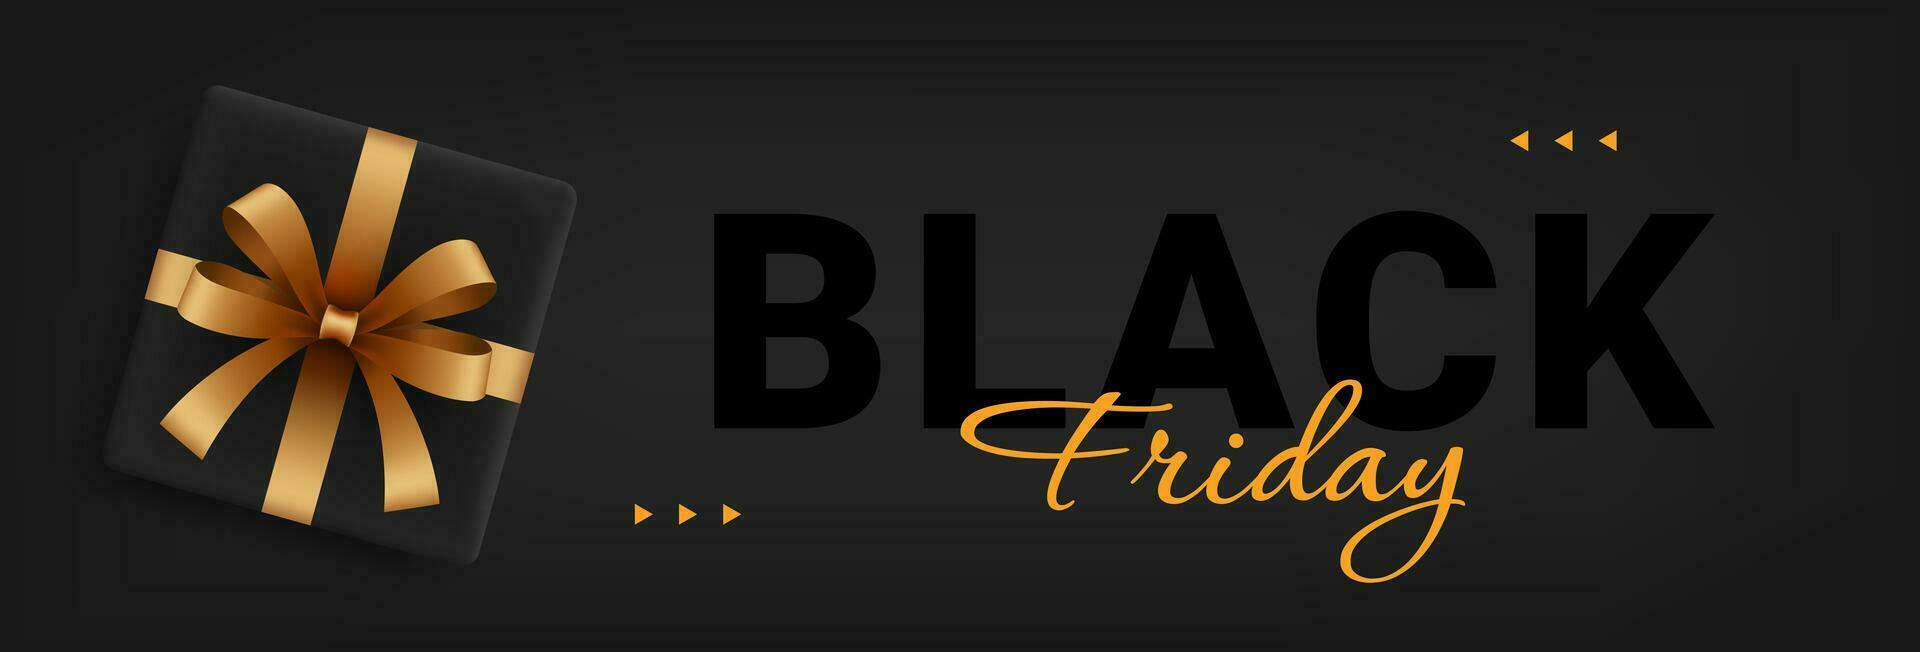 Black Friday sale design template. Black Friday sales promotion web banner, poster. Vector illustration